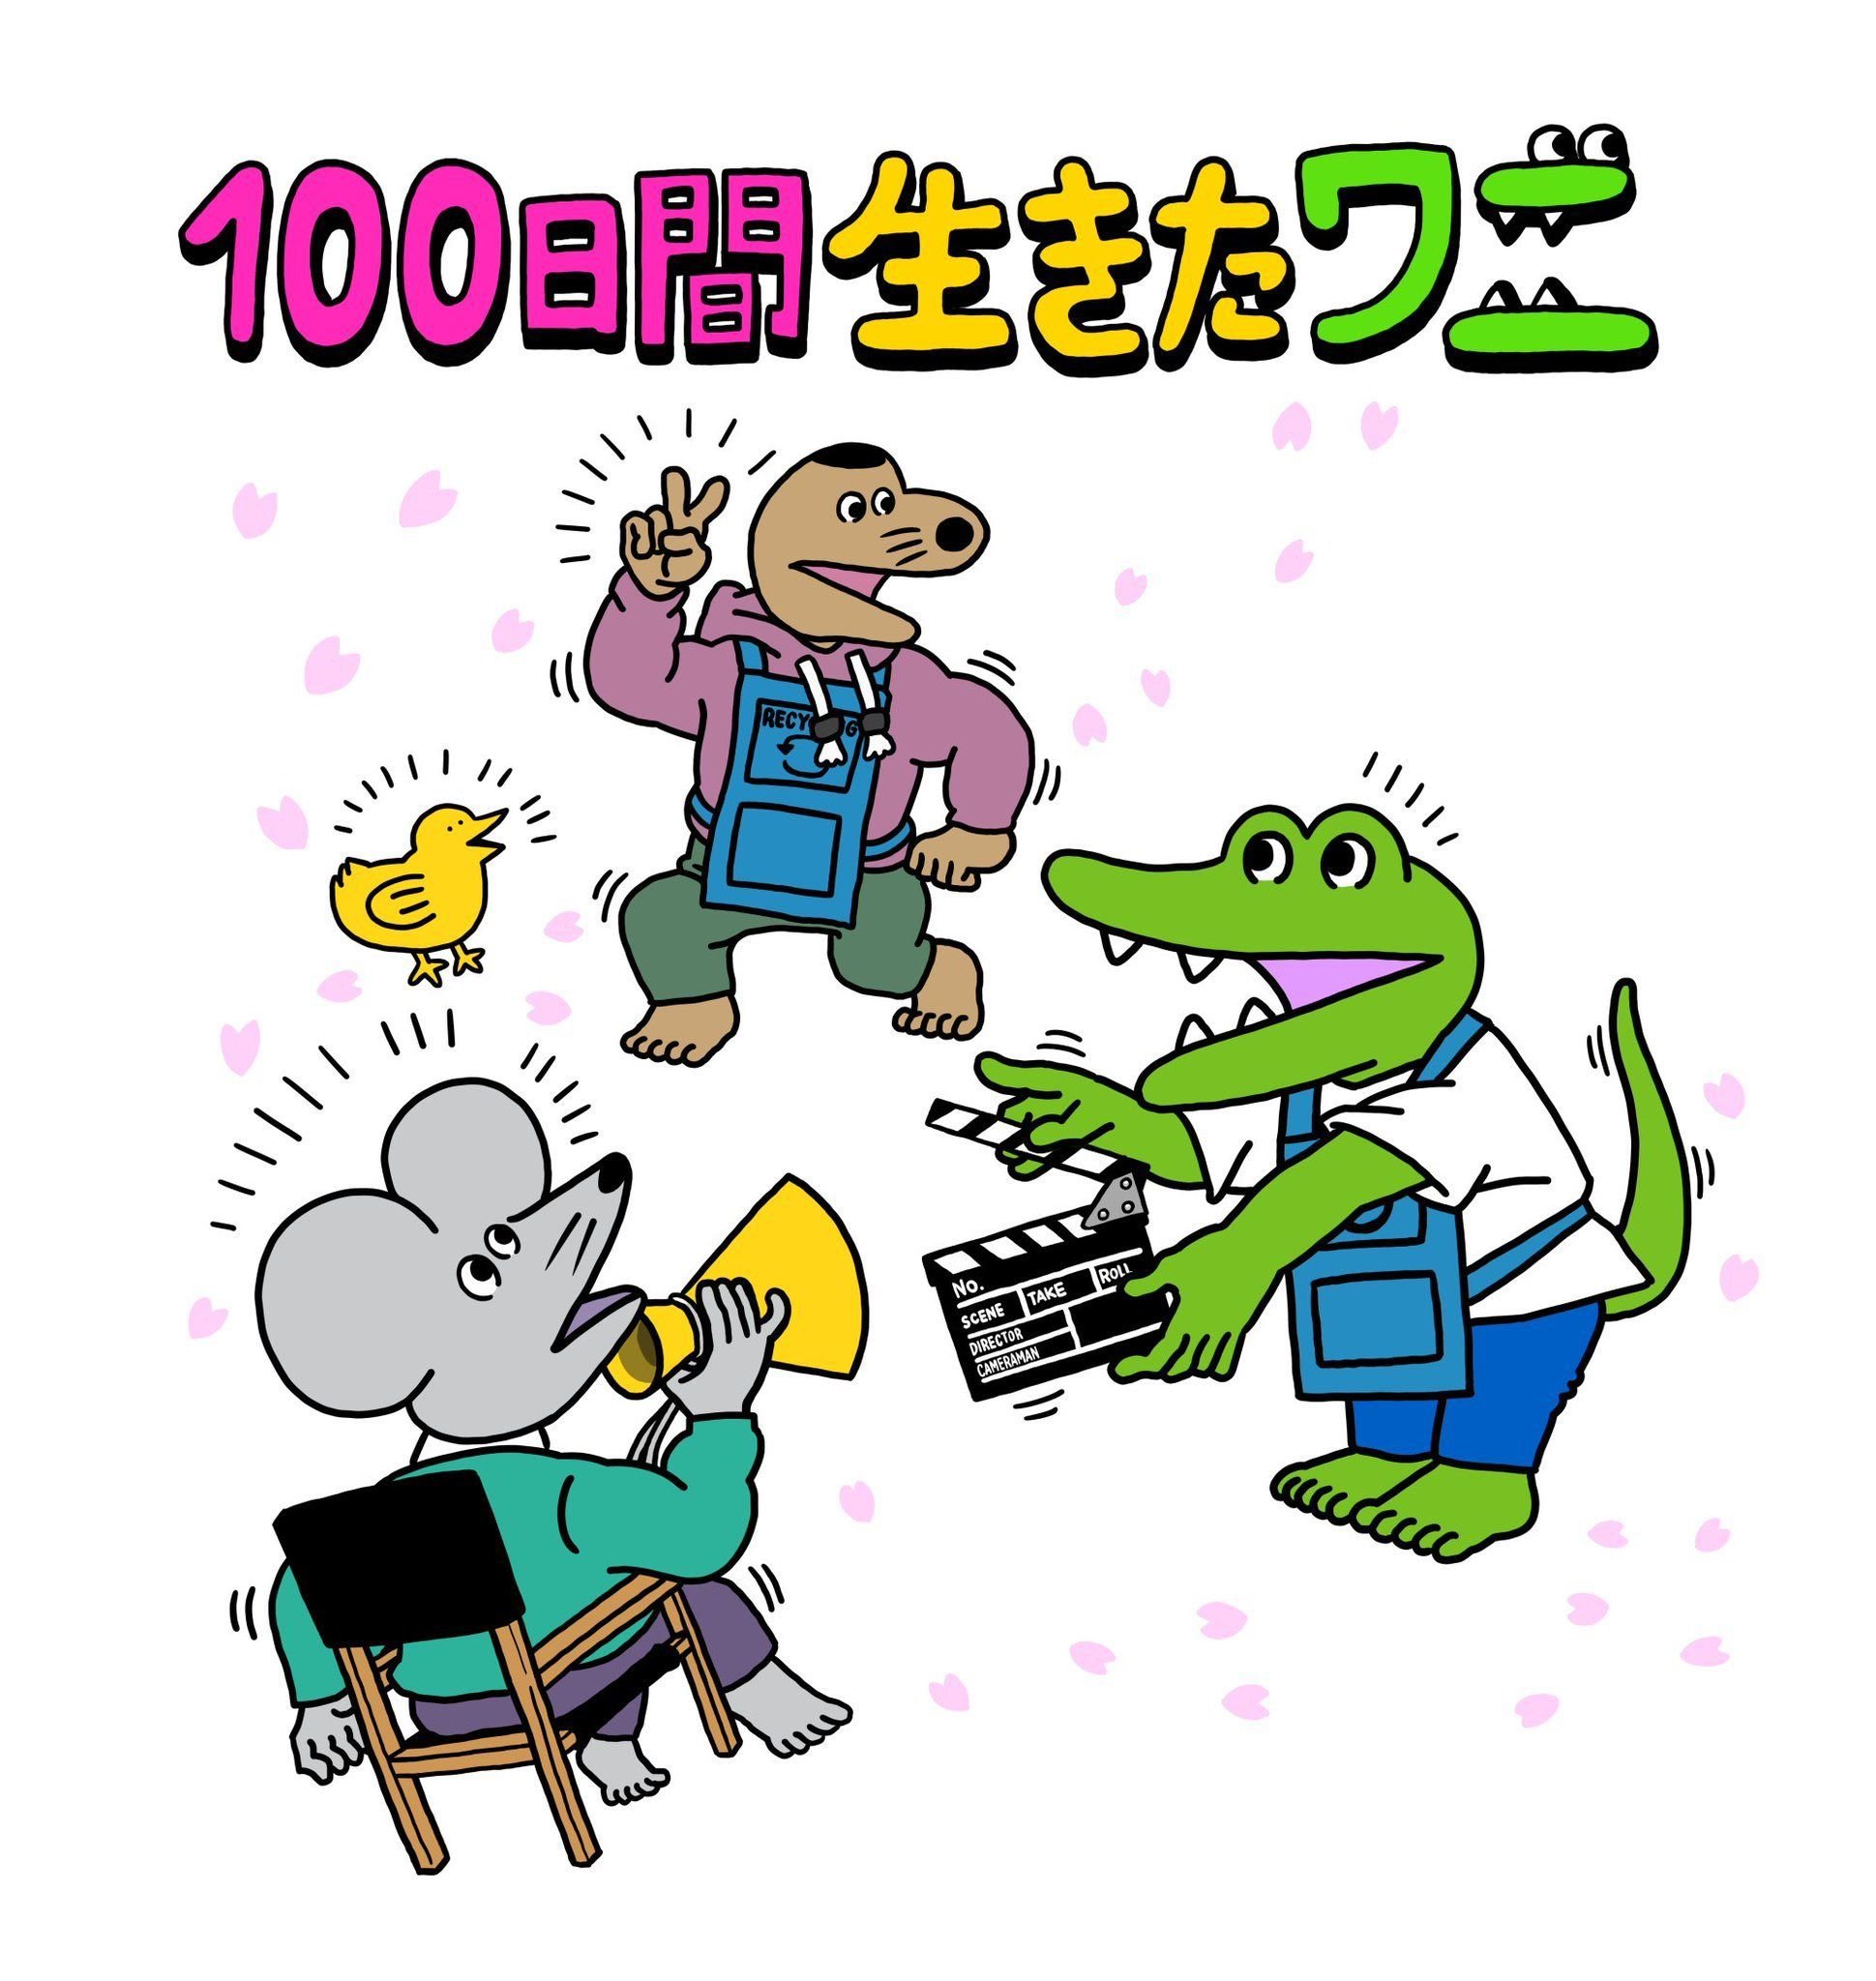 100日後に死ぬワニ 原作のアニメ映画 100日間生きたワニ 映像を初公開 Game Watch